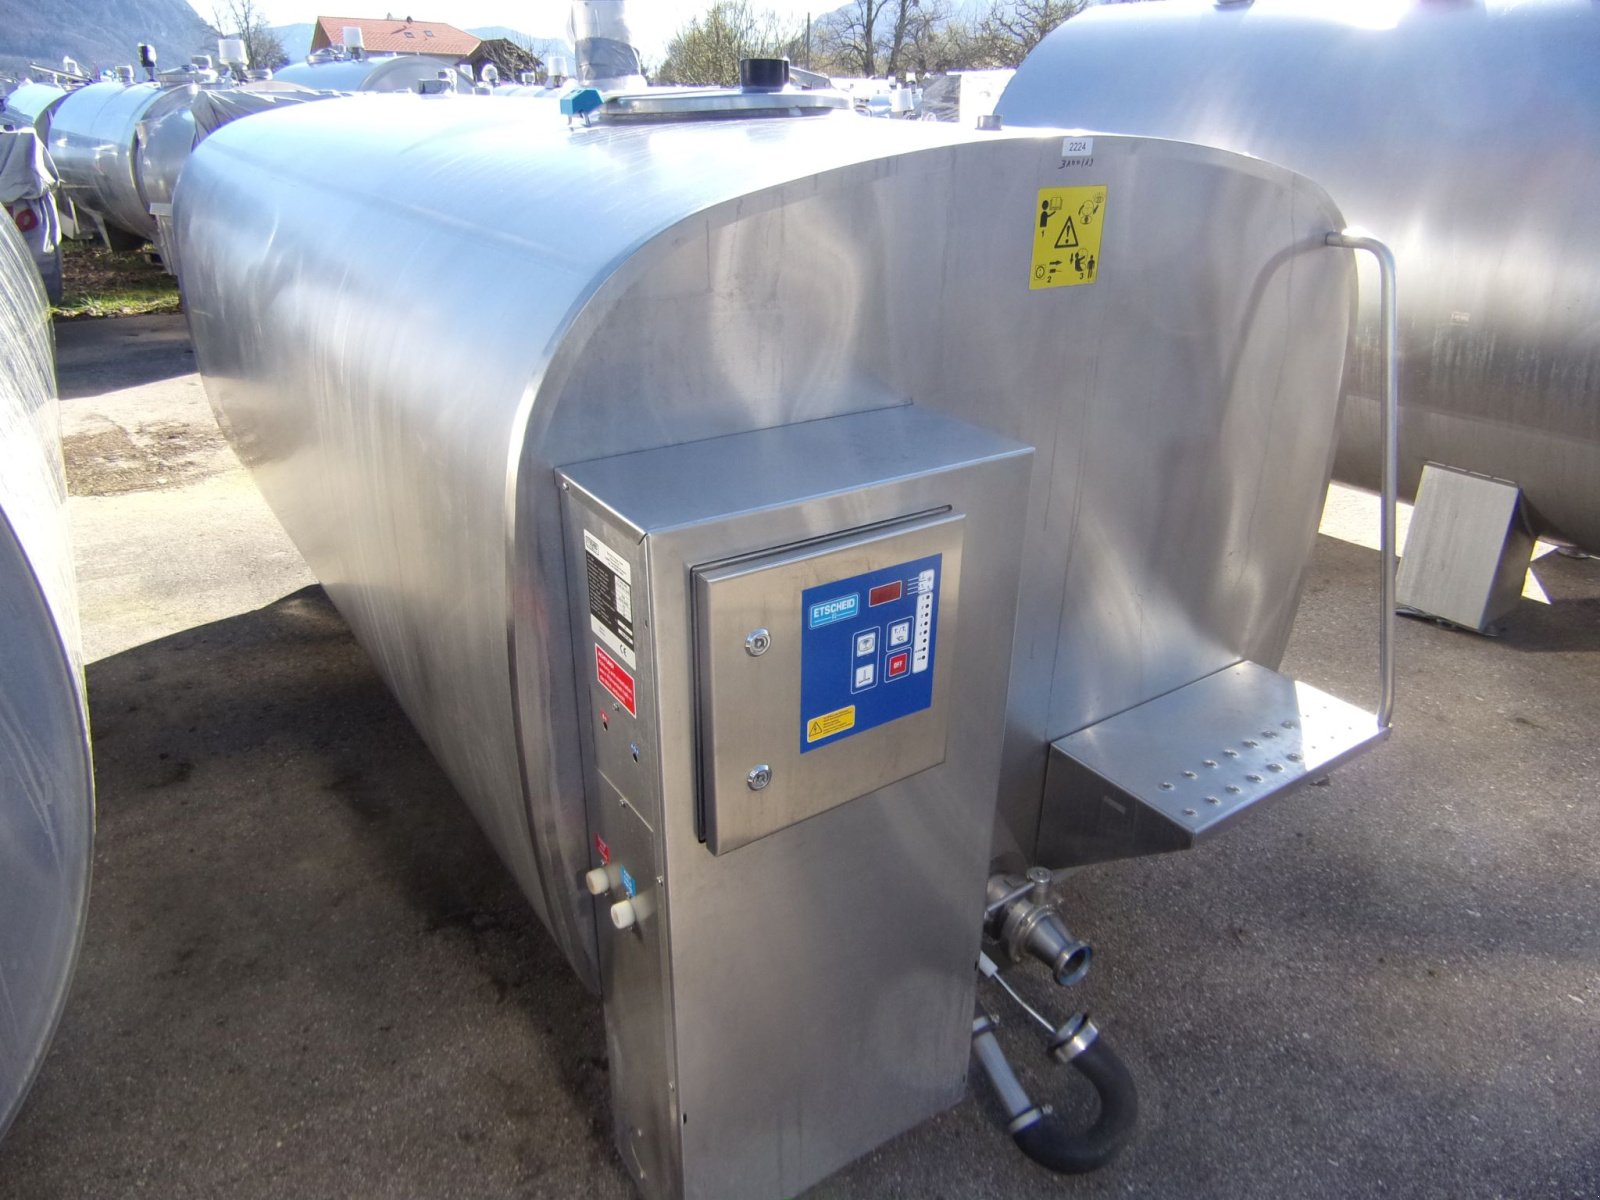 Milchkühltank des Typs Etscheid KT 3100, Gebrauchtmaschine in Übersee (Bild 1)